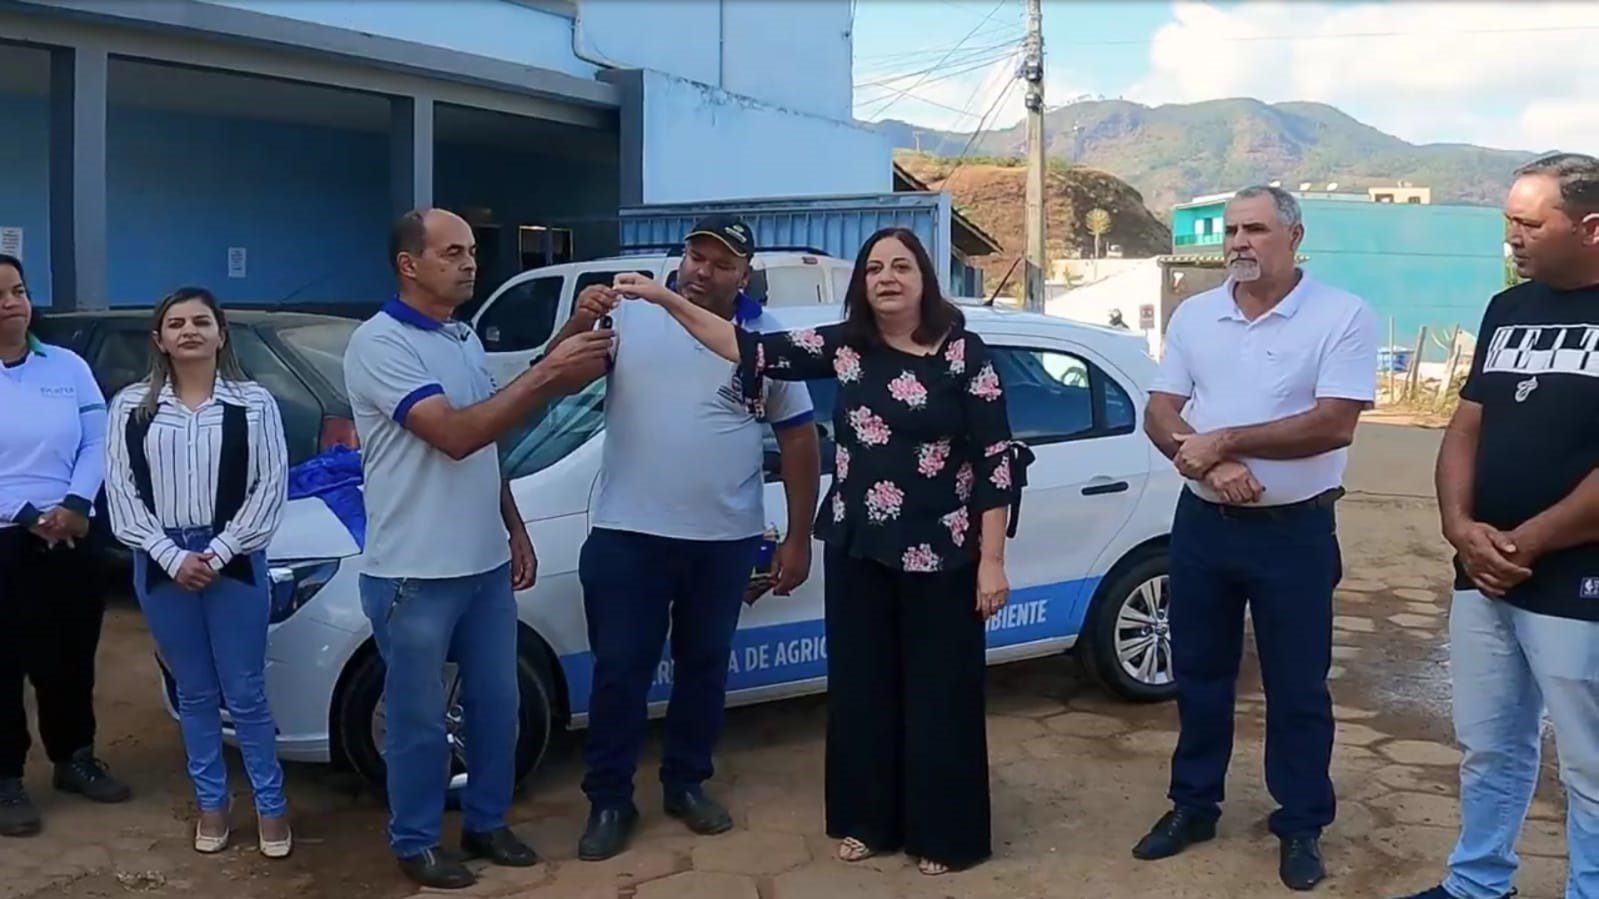 Frota renovada: Governo Municipal adquire mais um veículo 0km para atender as demandas de Santa Bárbara do Leste